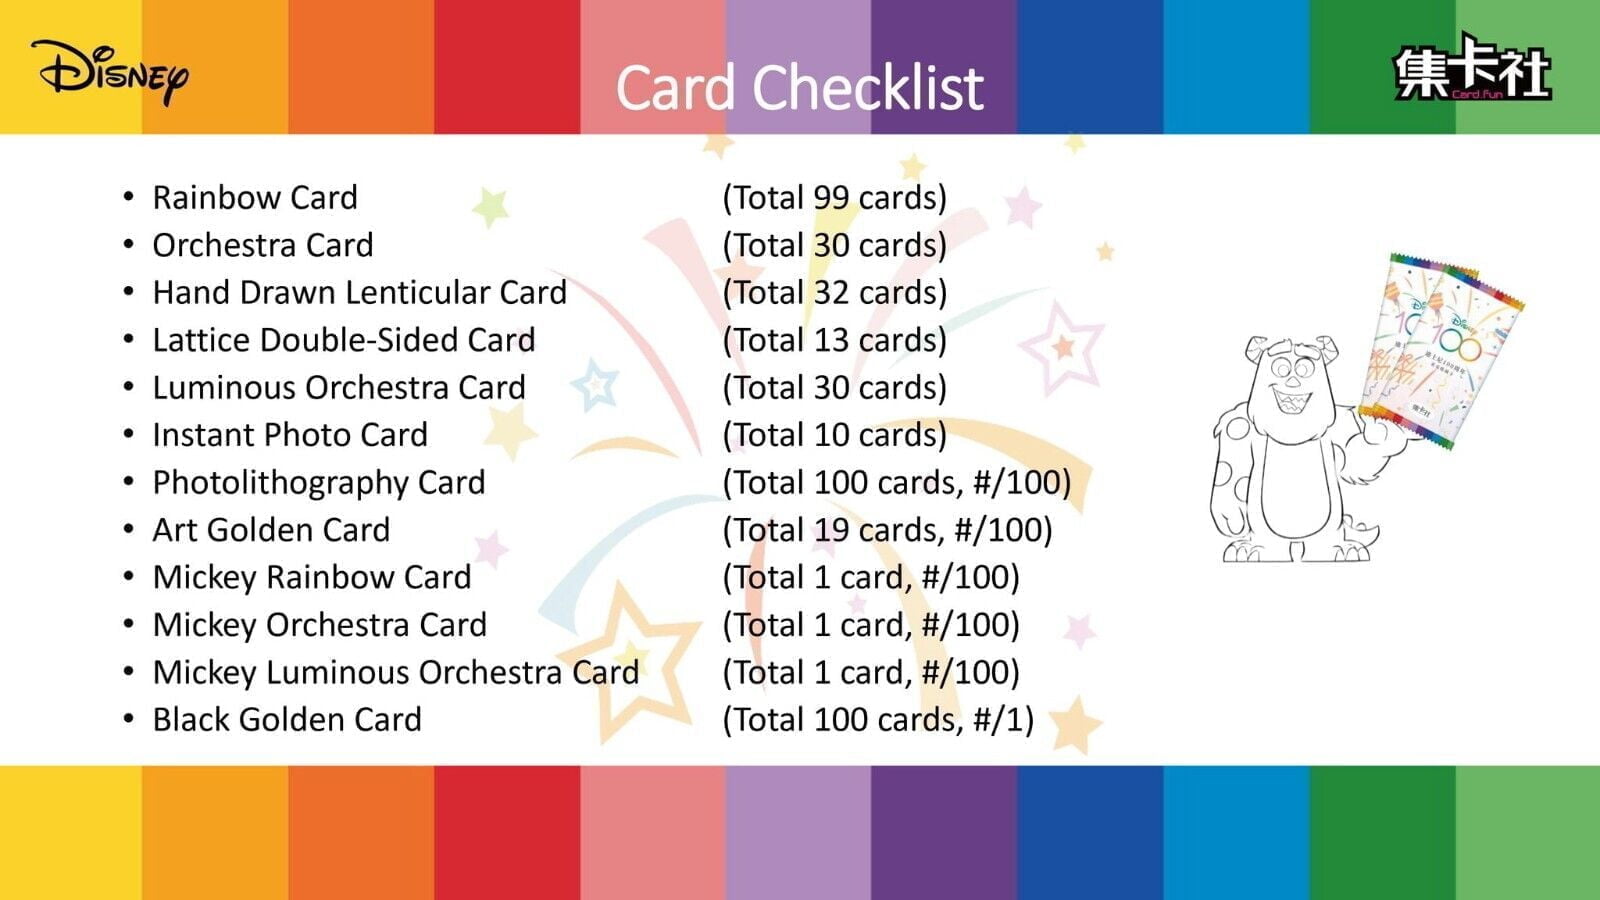 2023 Card.Fun Disney 100 Joyful ~ Double-Sided Lattice Cards